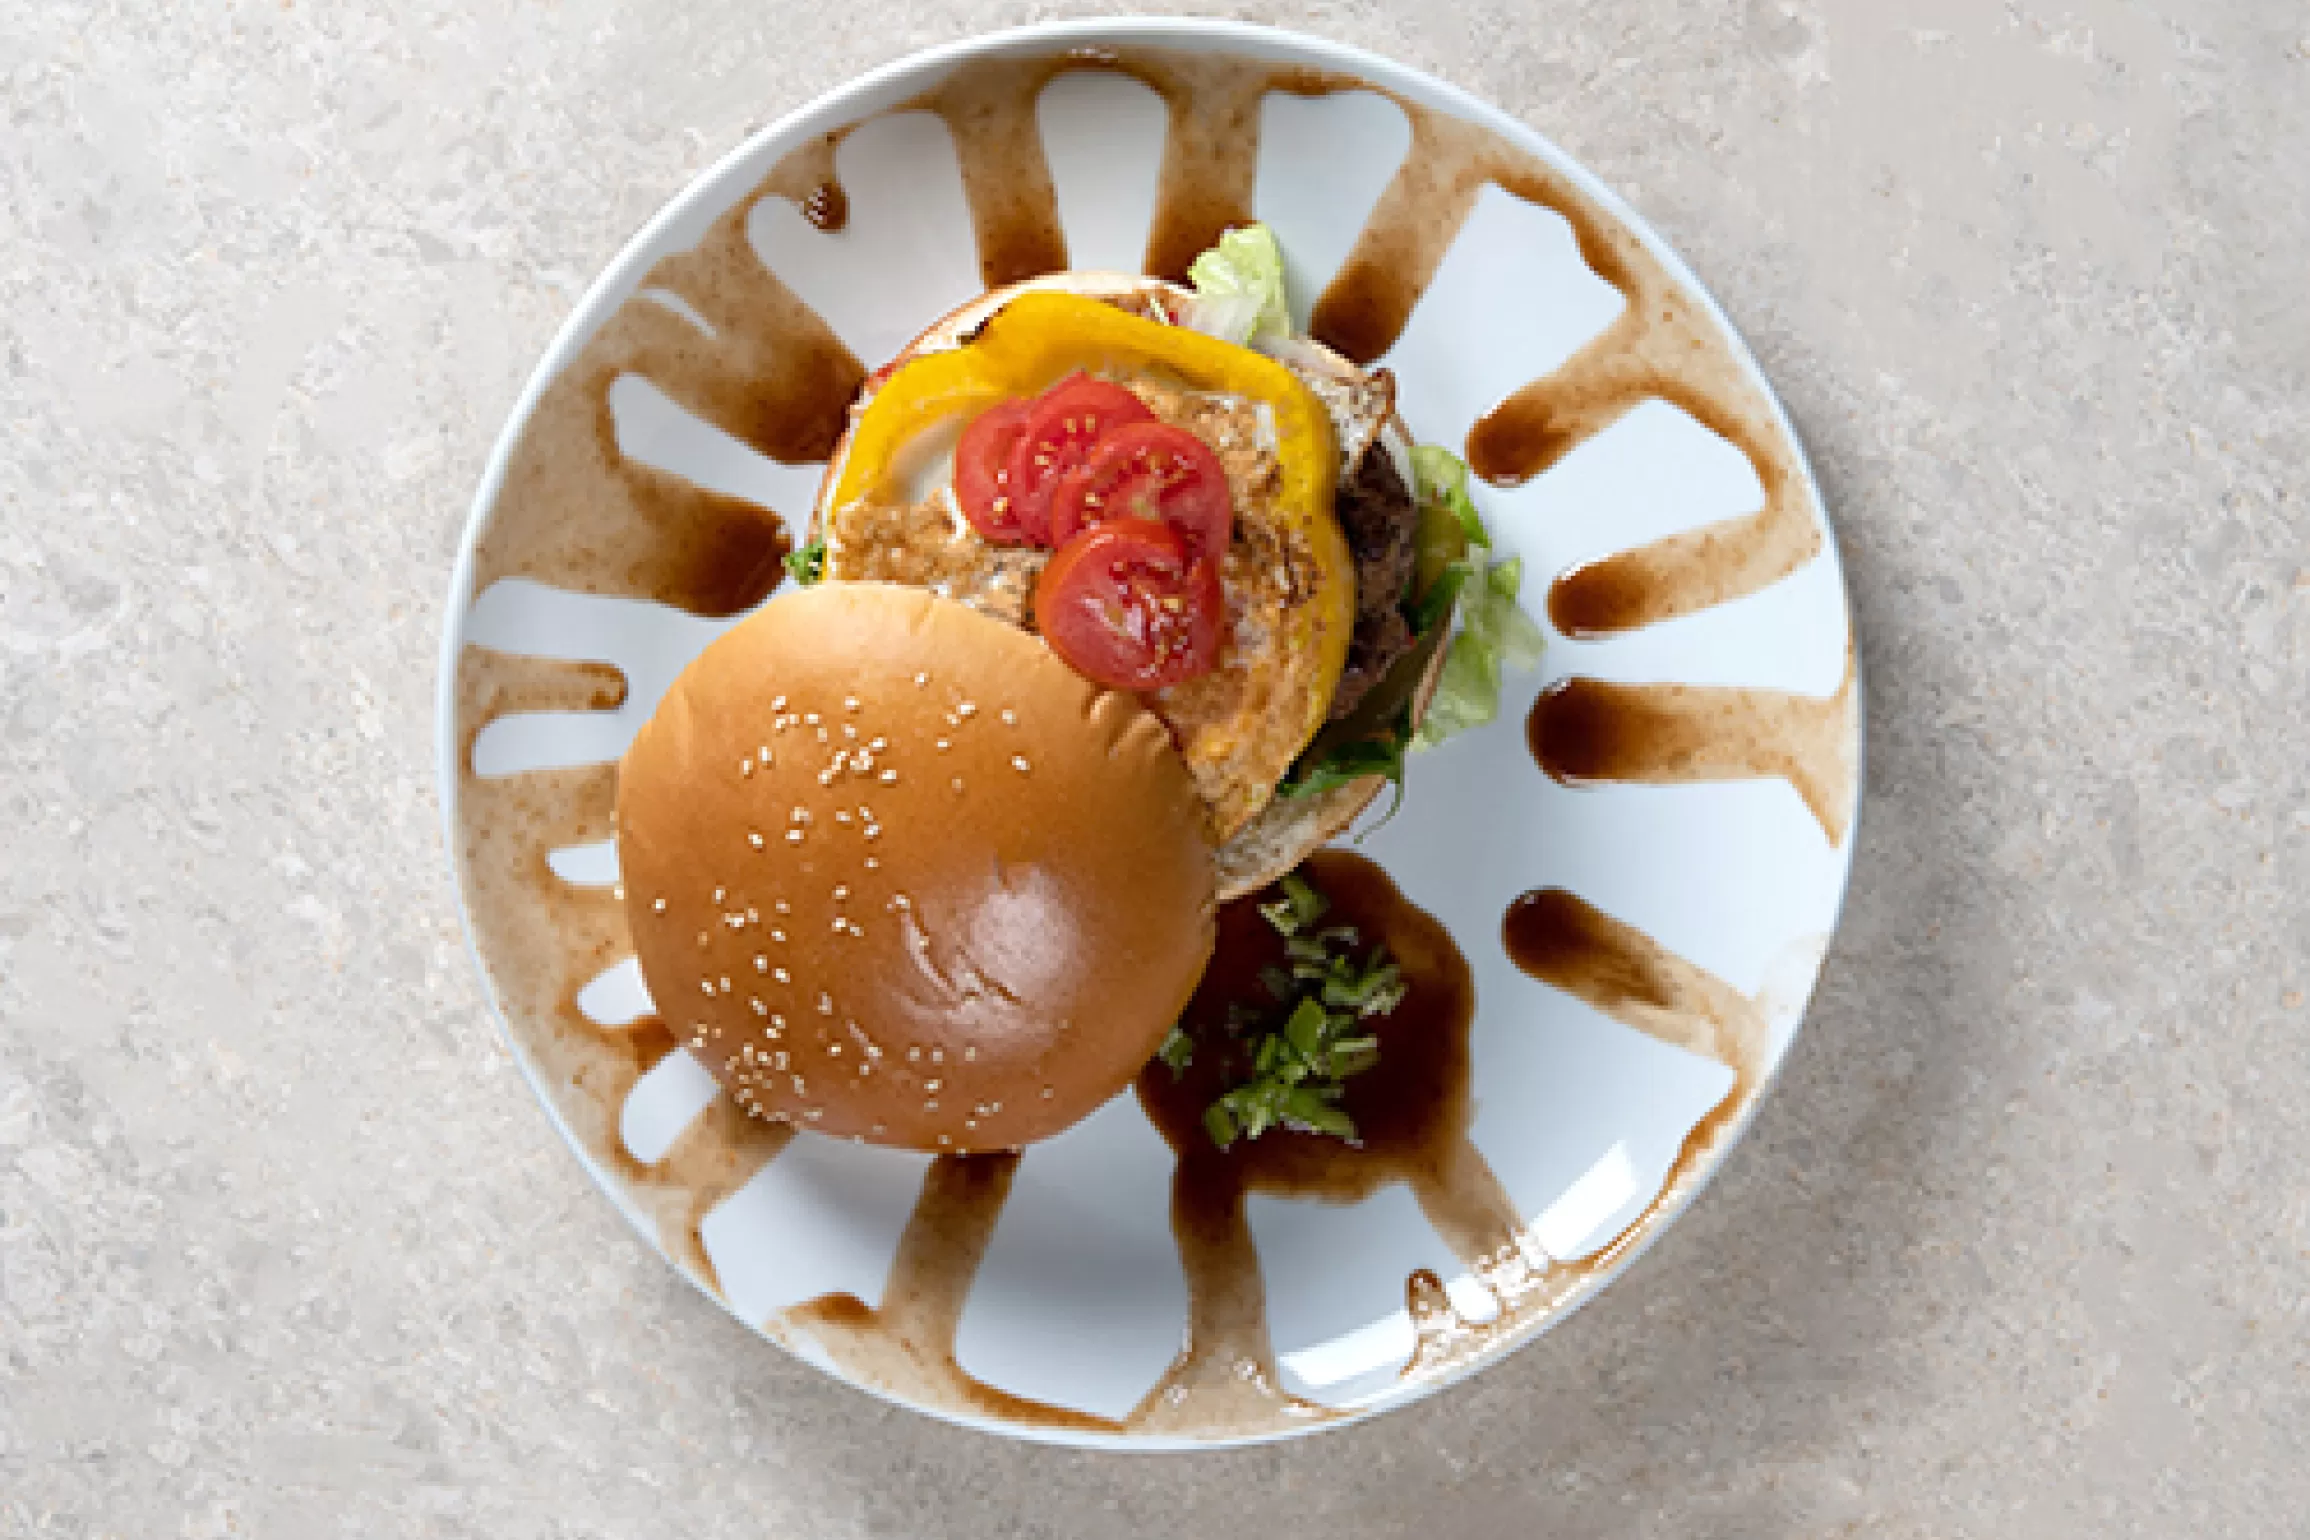 Egg-topped burger